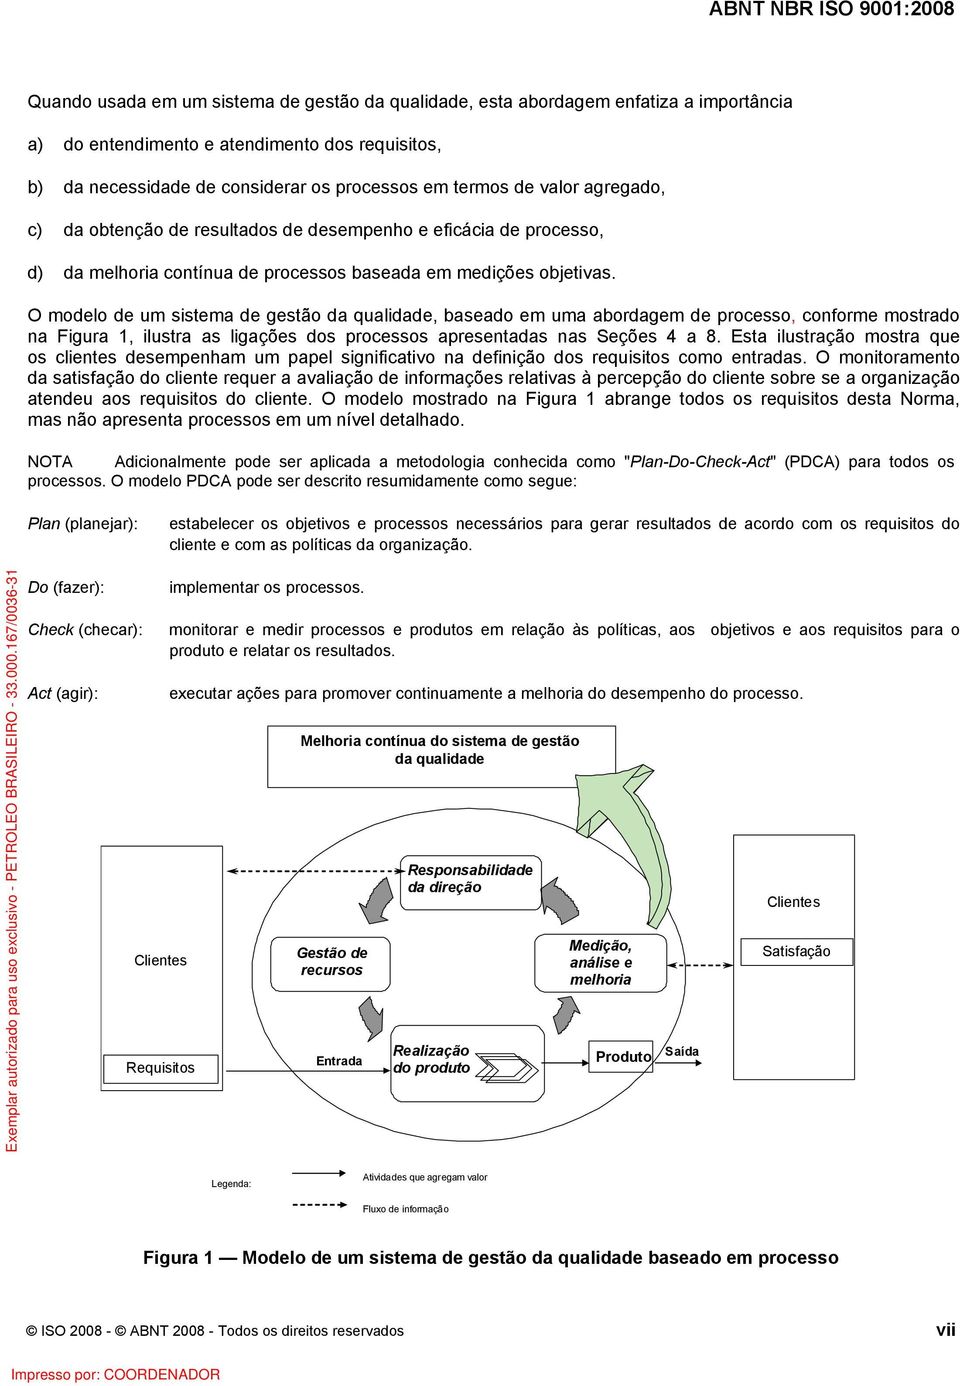 O modelo de um sistema de gestão da qualidade, baseado em uma abordagem de processo, conforme mostrado na Figura 1, ilustra as ligações dos processos apresentadas nas Seções 4 a 8.